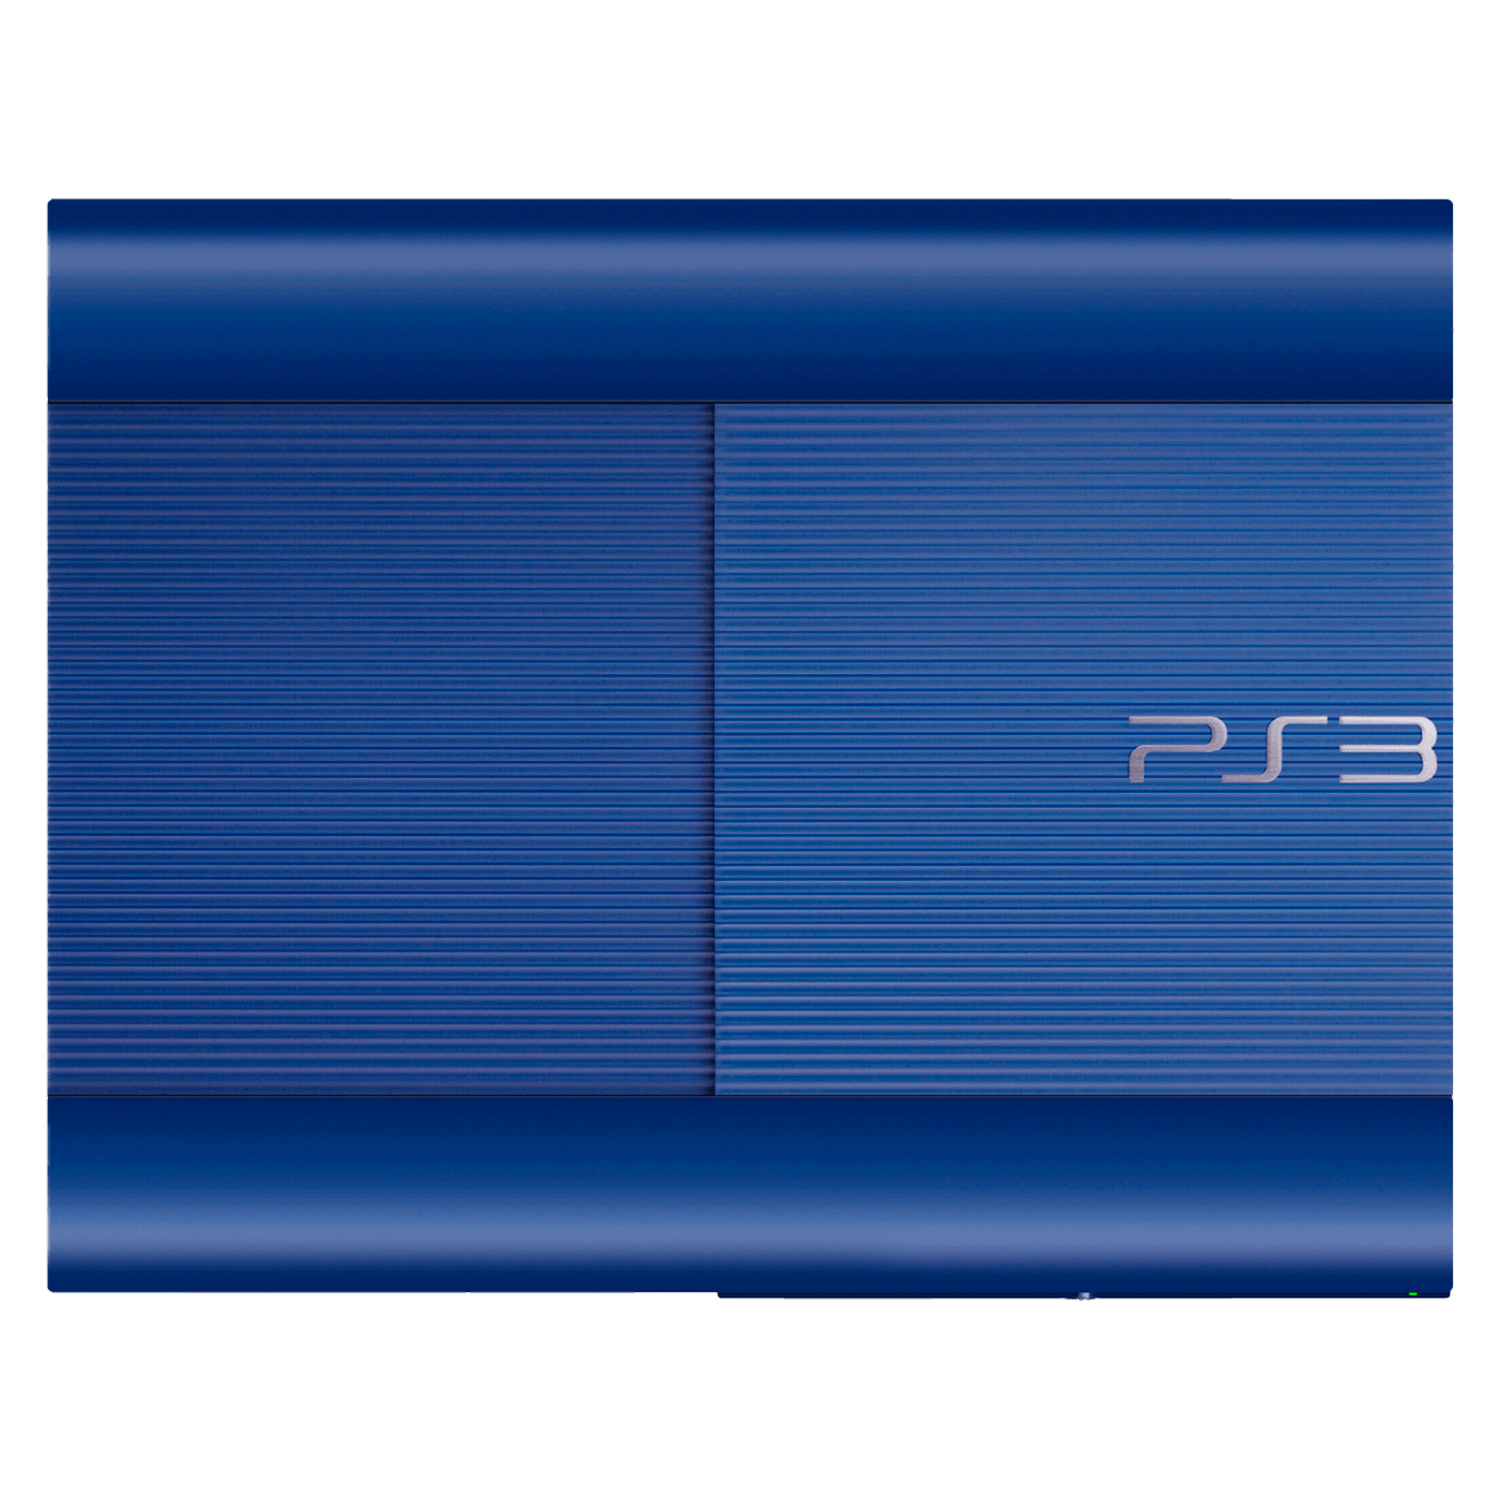 Console Sony Playstation 3 CECH-4201B 250GB - Azul (Original)